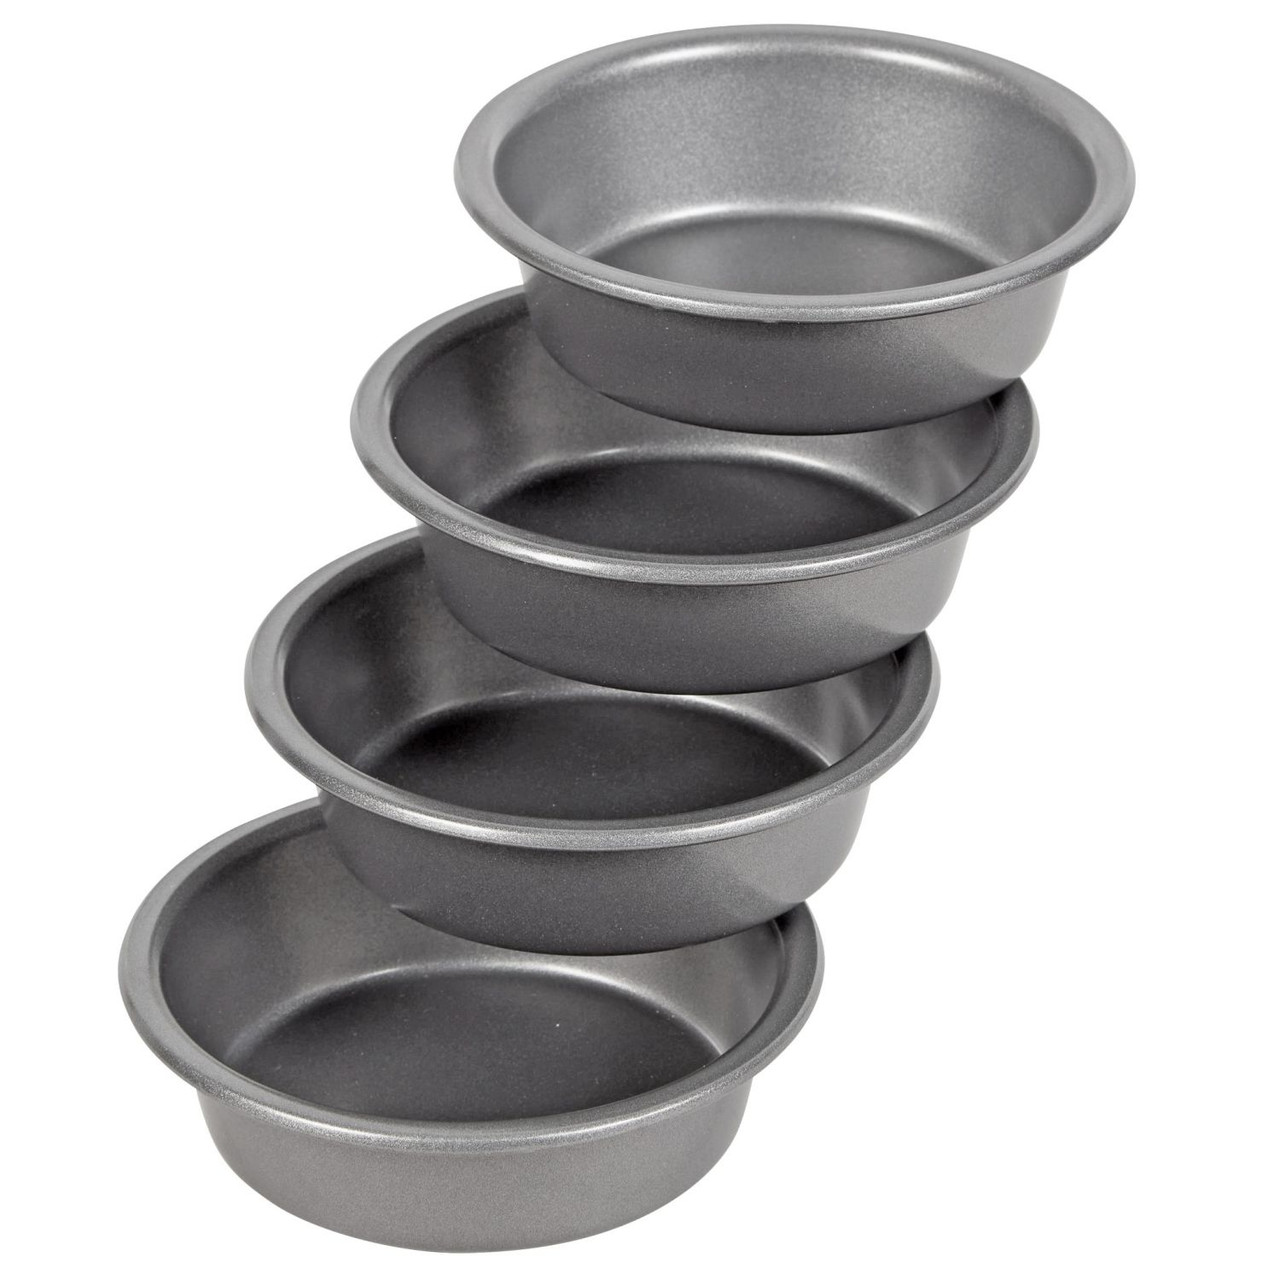 Wilton Mini Round Cake Pans, STD, SilverWilton Non-Stick Mini Round Pan  Set, 3-Piece, Steel